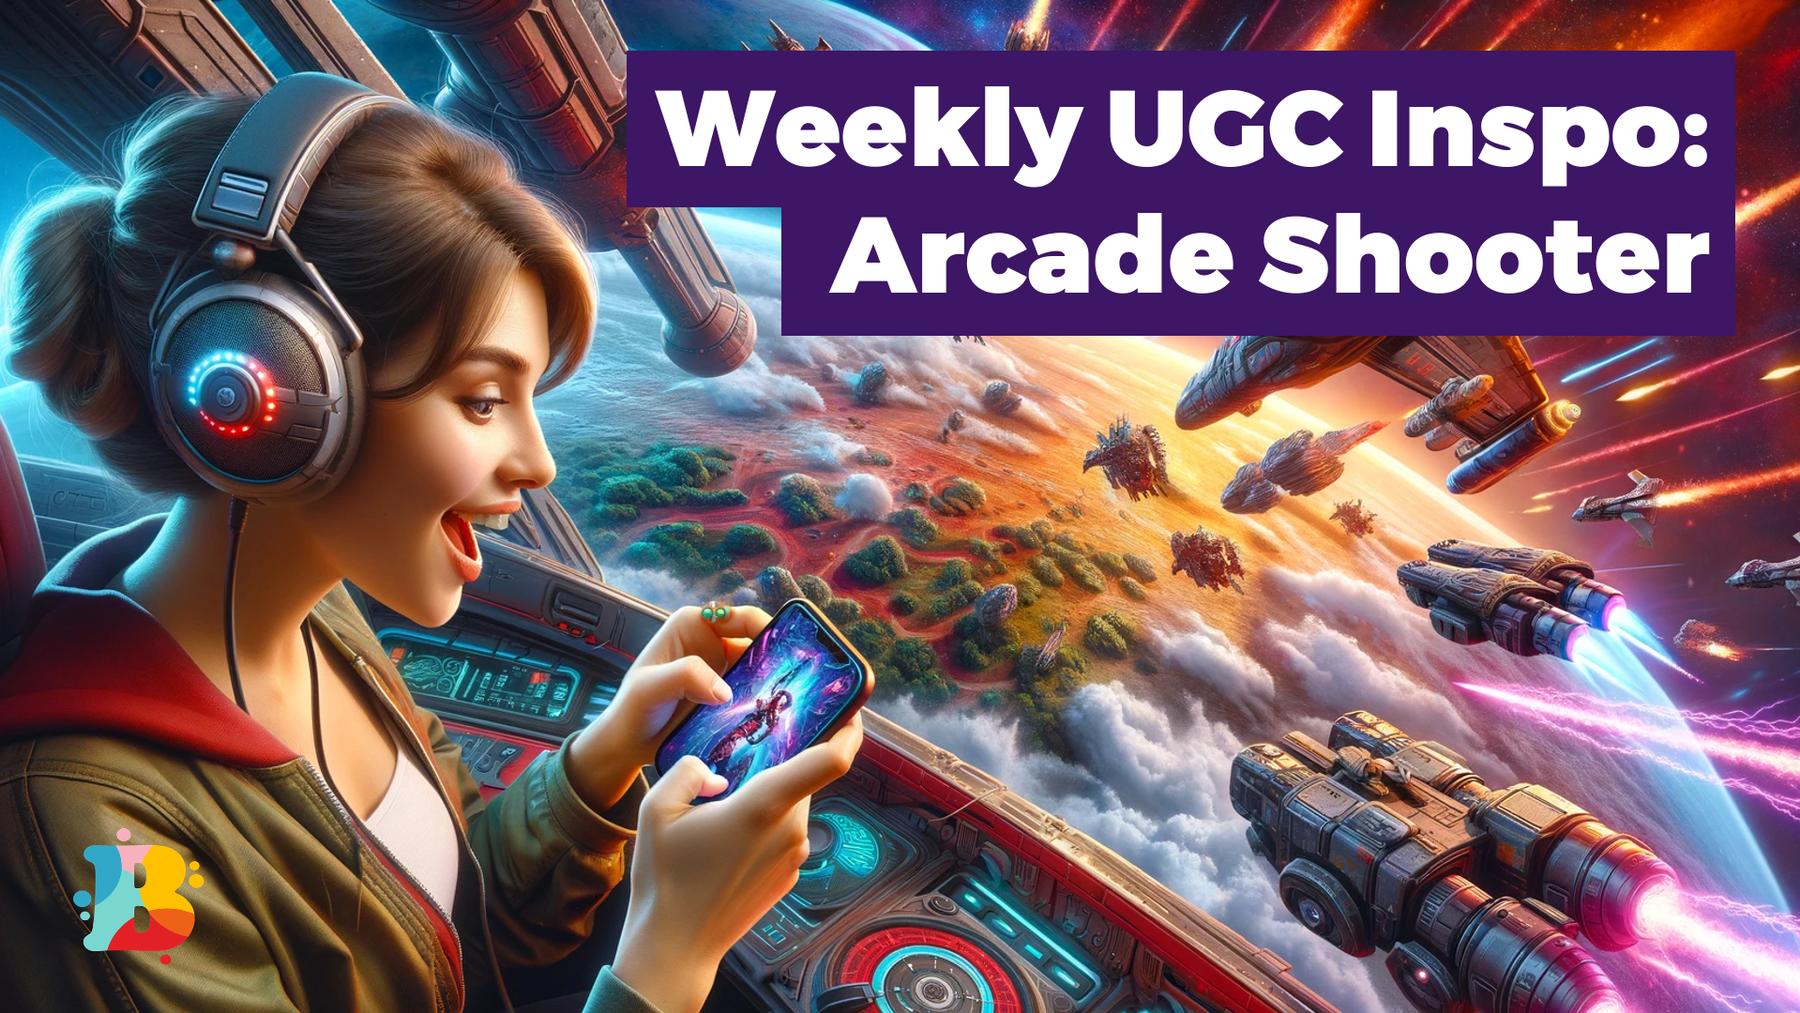 Weekly UGC Inspo: Arcade Shooter